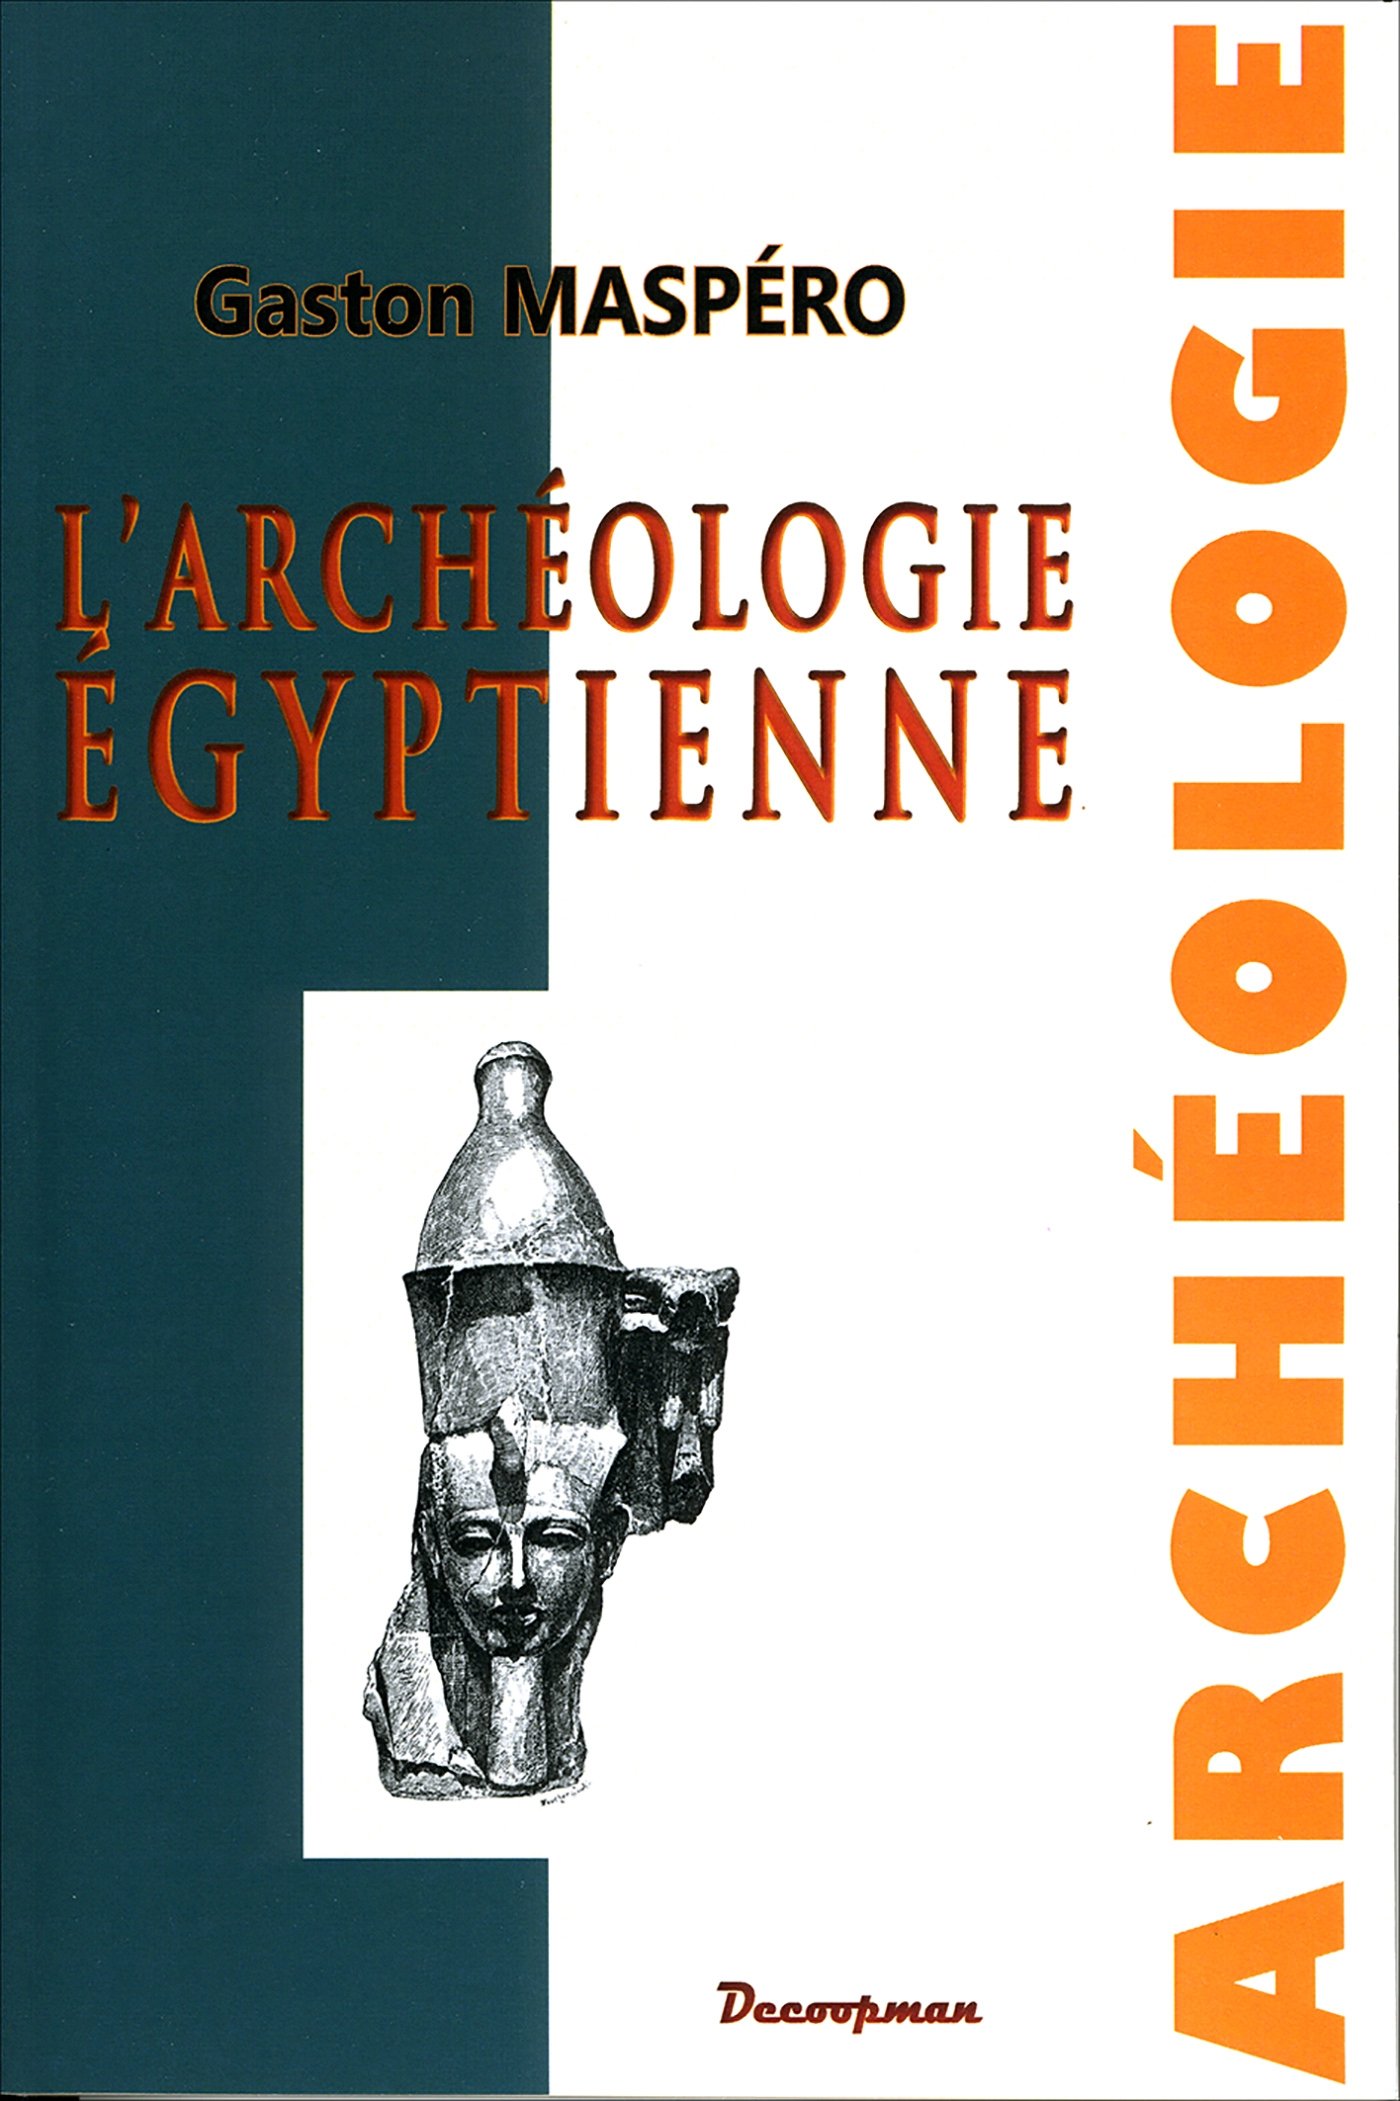 L'Archéologie égyptienne, 2014, 240 p., 300 gravures.